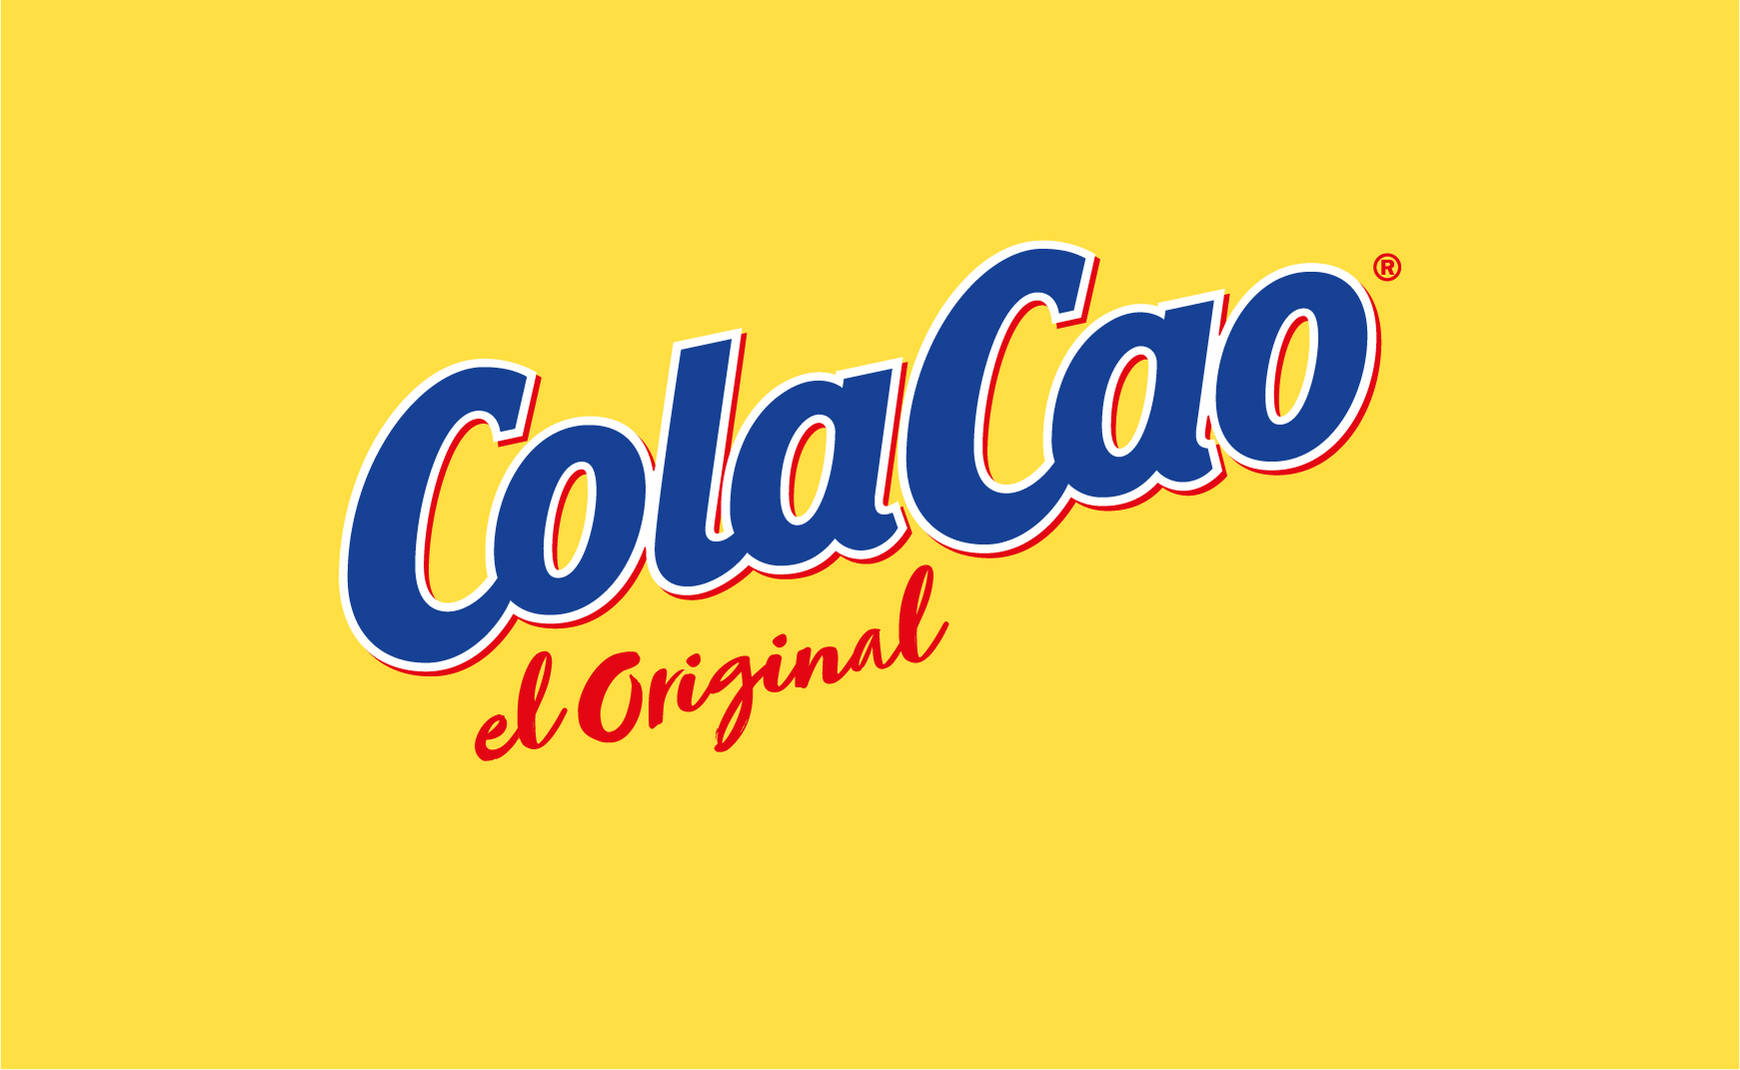 ColaCao original